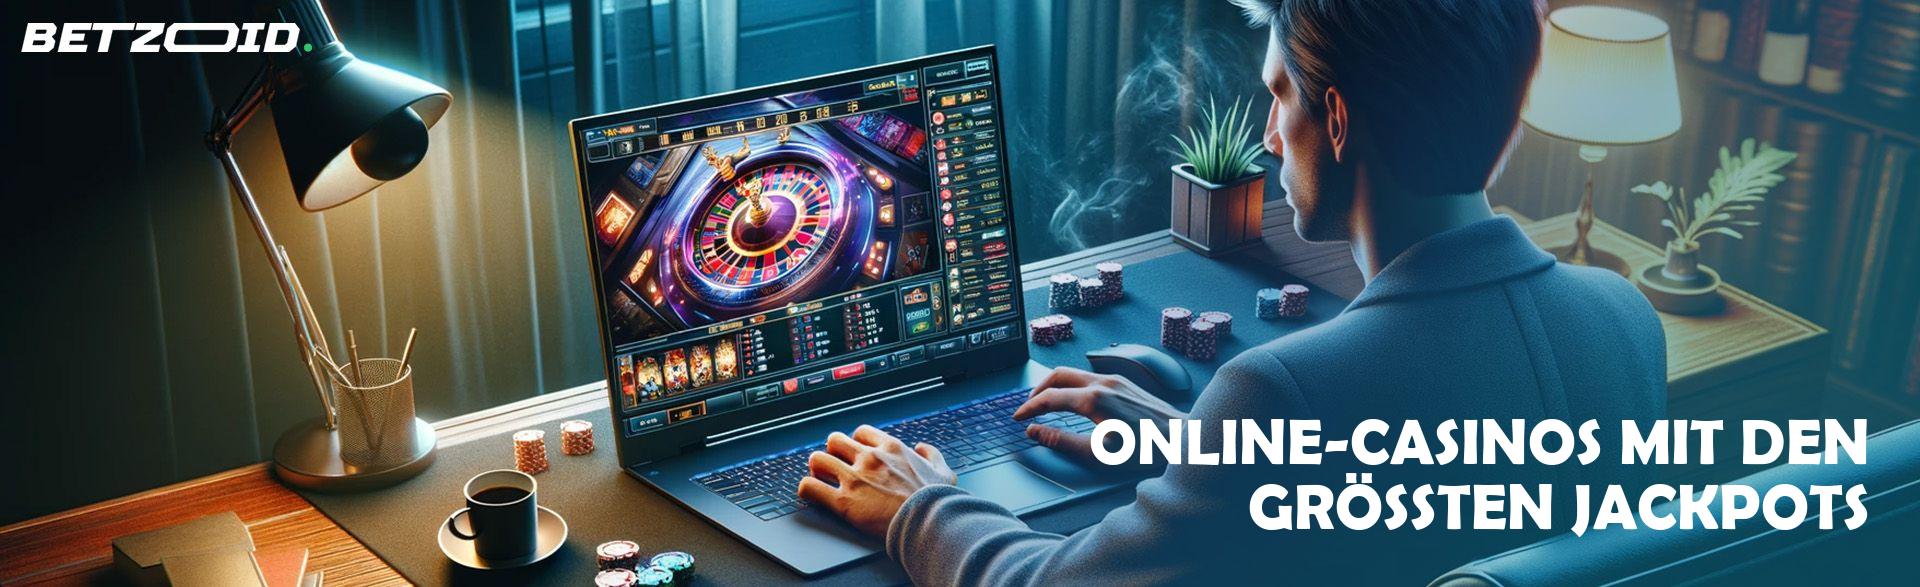 Online-Casinos mit den Größten Jackpots.